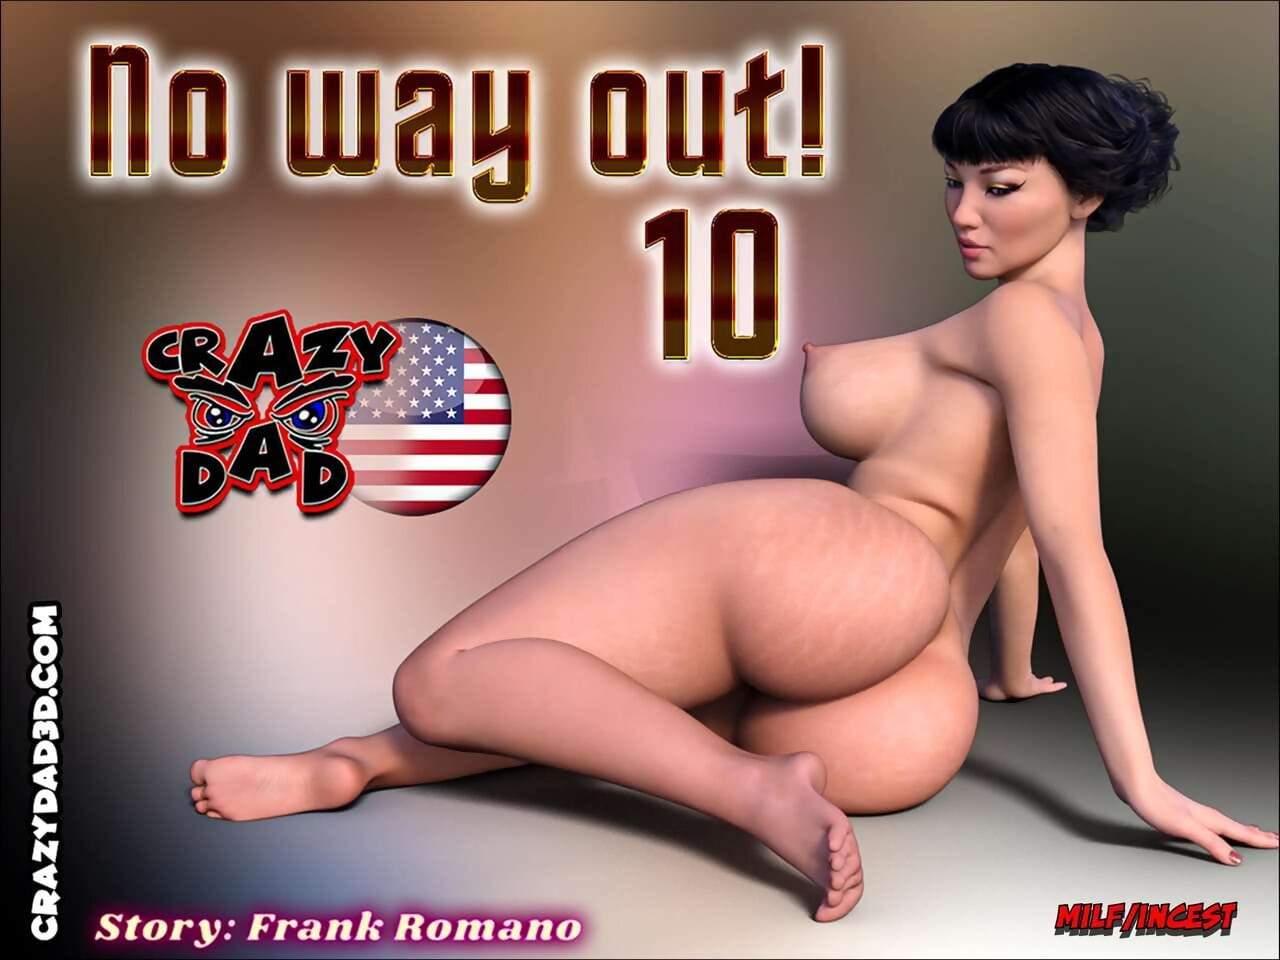 Crazydad3D- No way out! 10